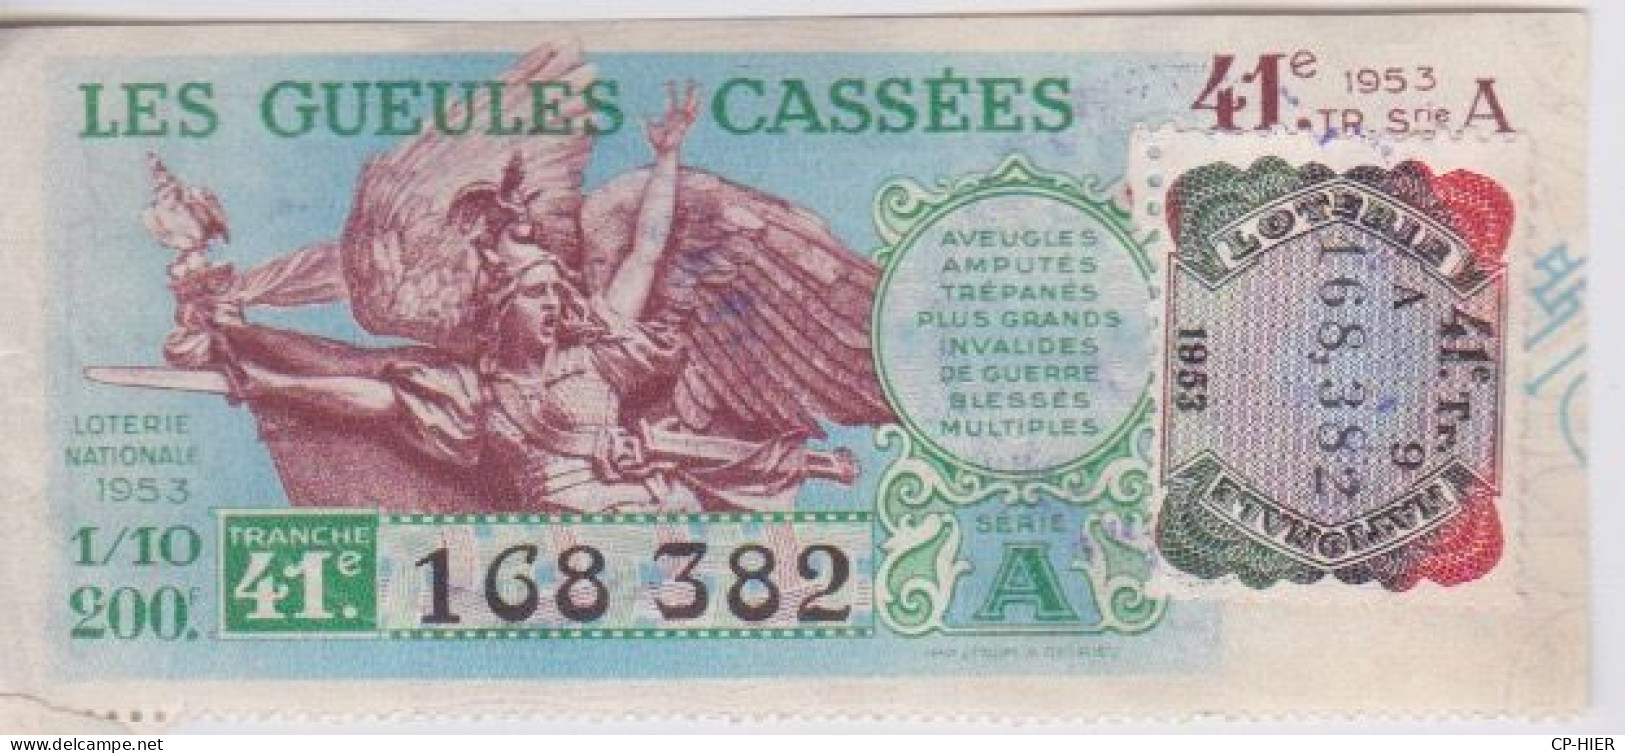 BILLET DE LOTERIE NATIONALE - LES GUEULES CASSEES - + VIGNETTE  1953 + CACHET AU DOS - Billetes De Lotería